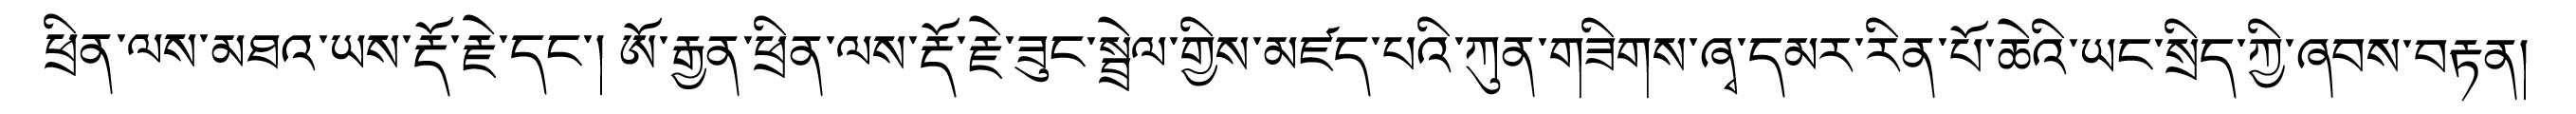 image : titre en tibétain